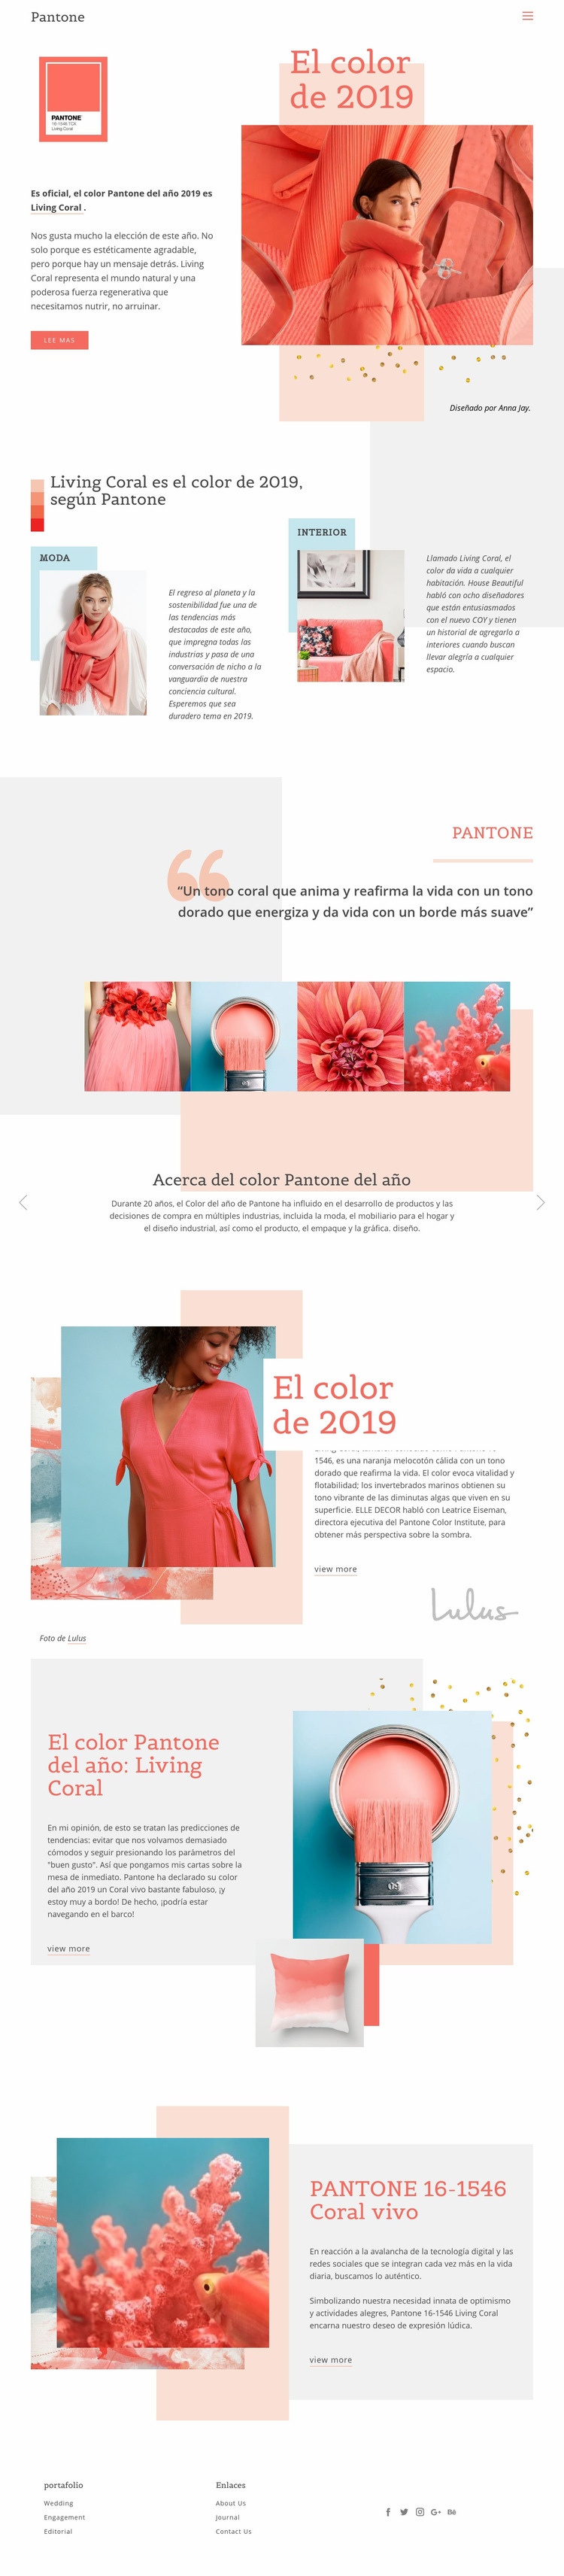 Color de 2019 Diseño de páginas web